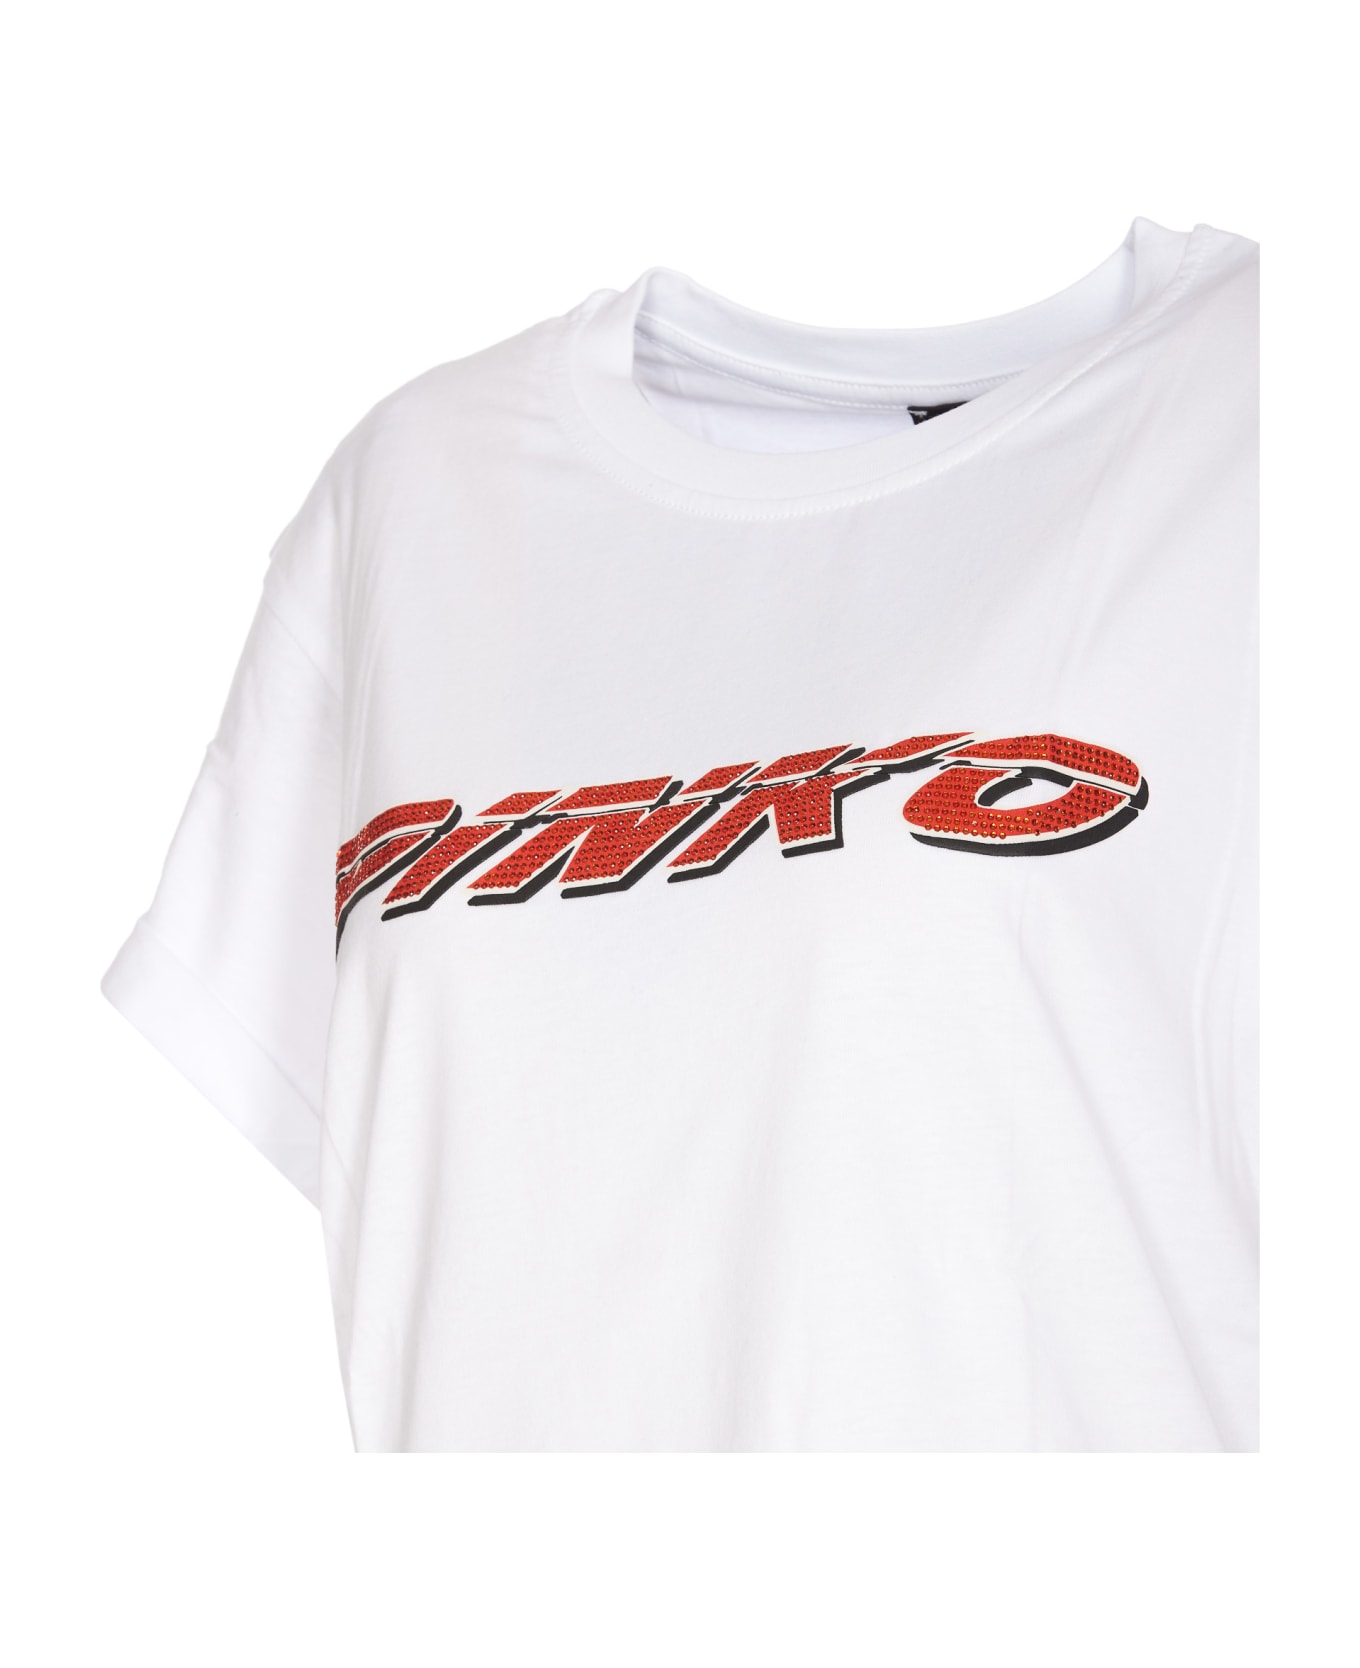 Pinko Telesto T-shirt - White